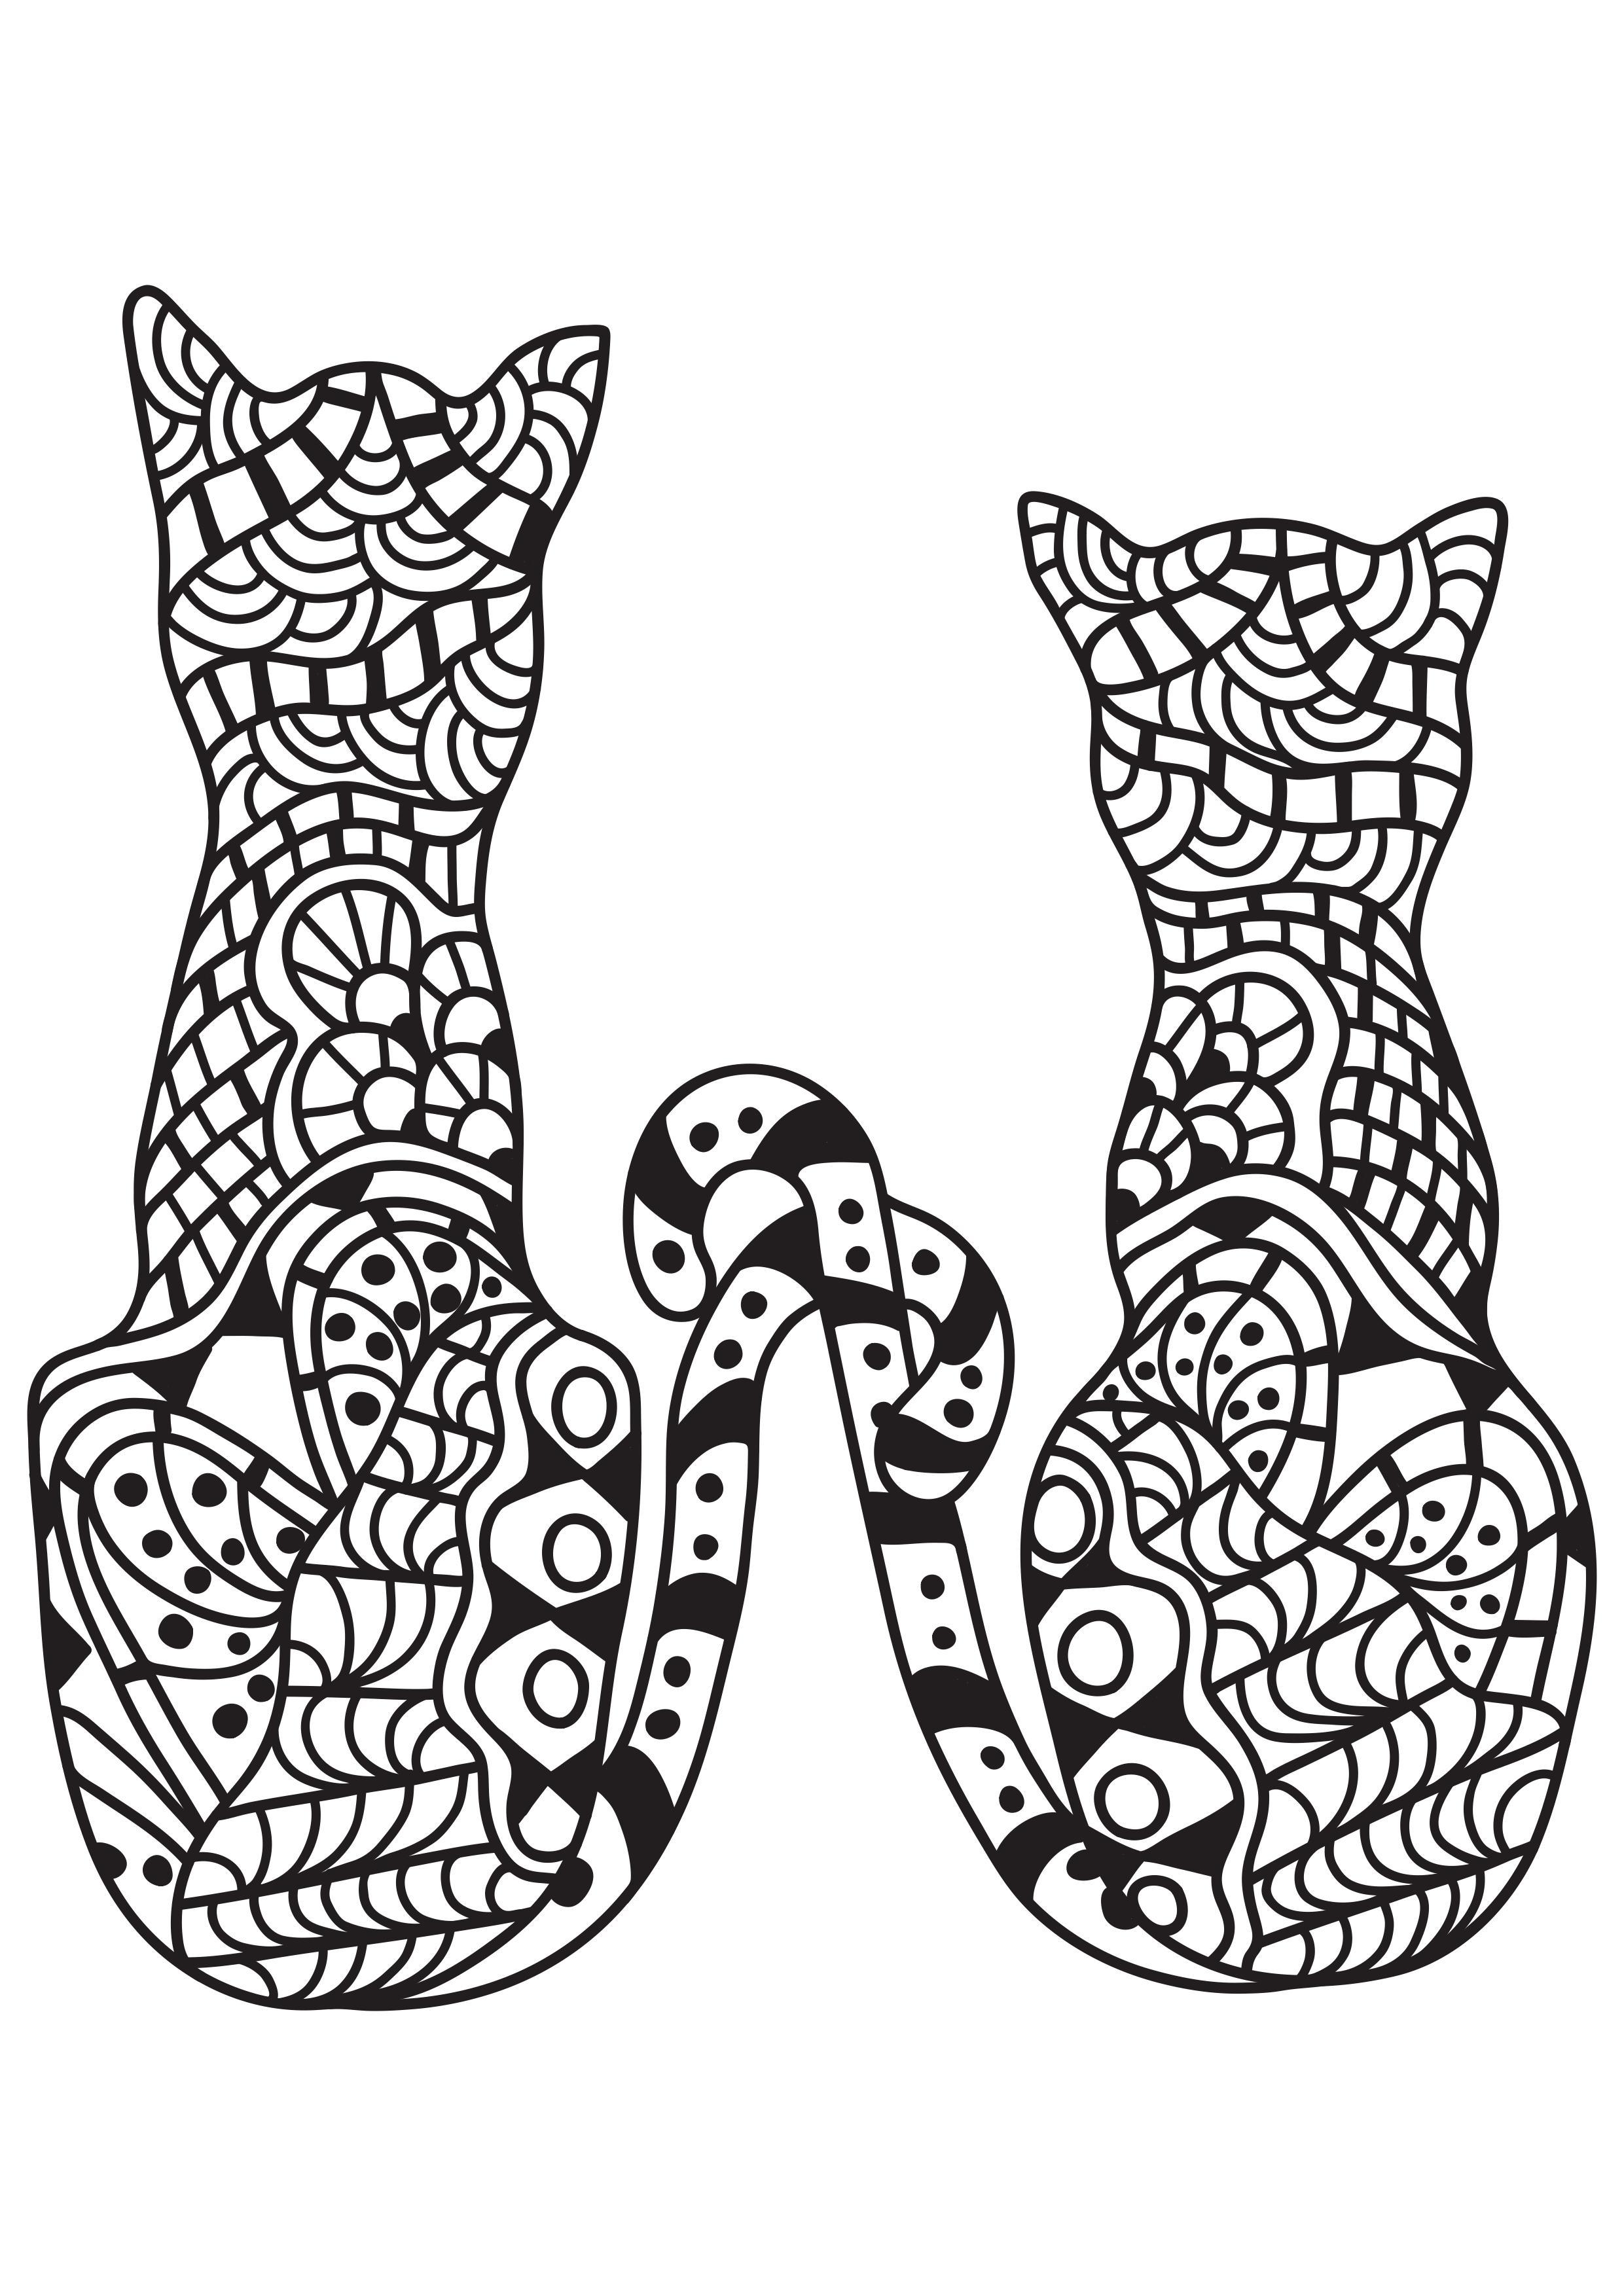 Dibujo para colorear 2 gatos